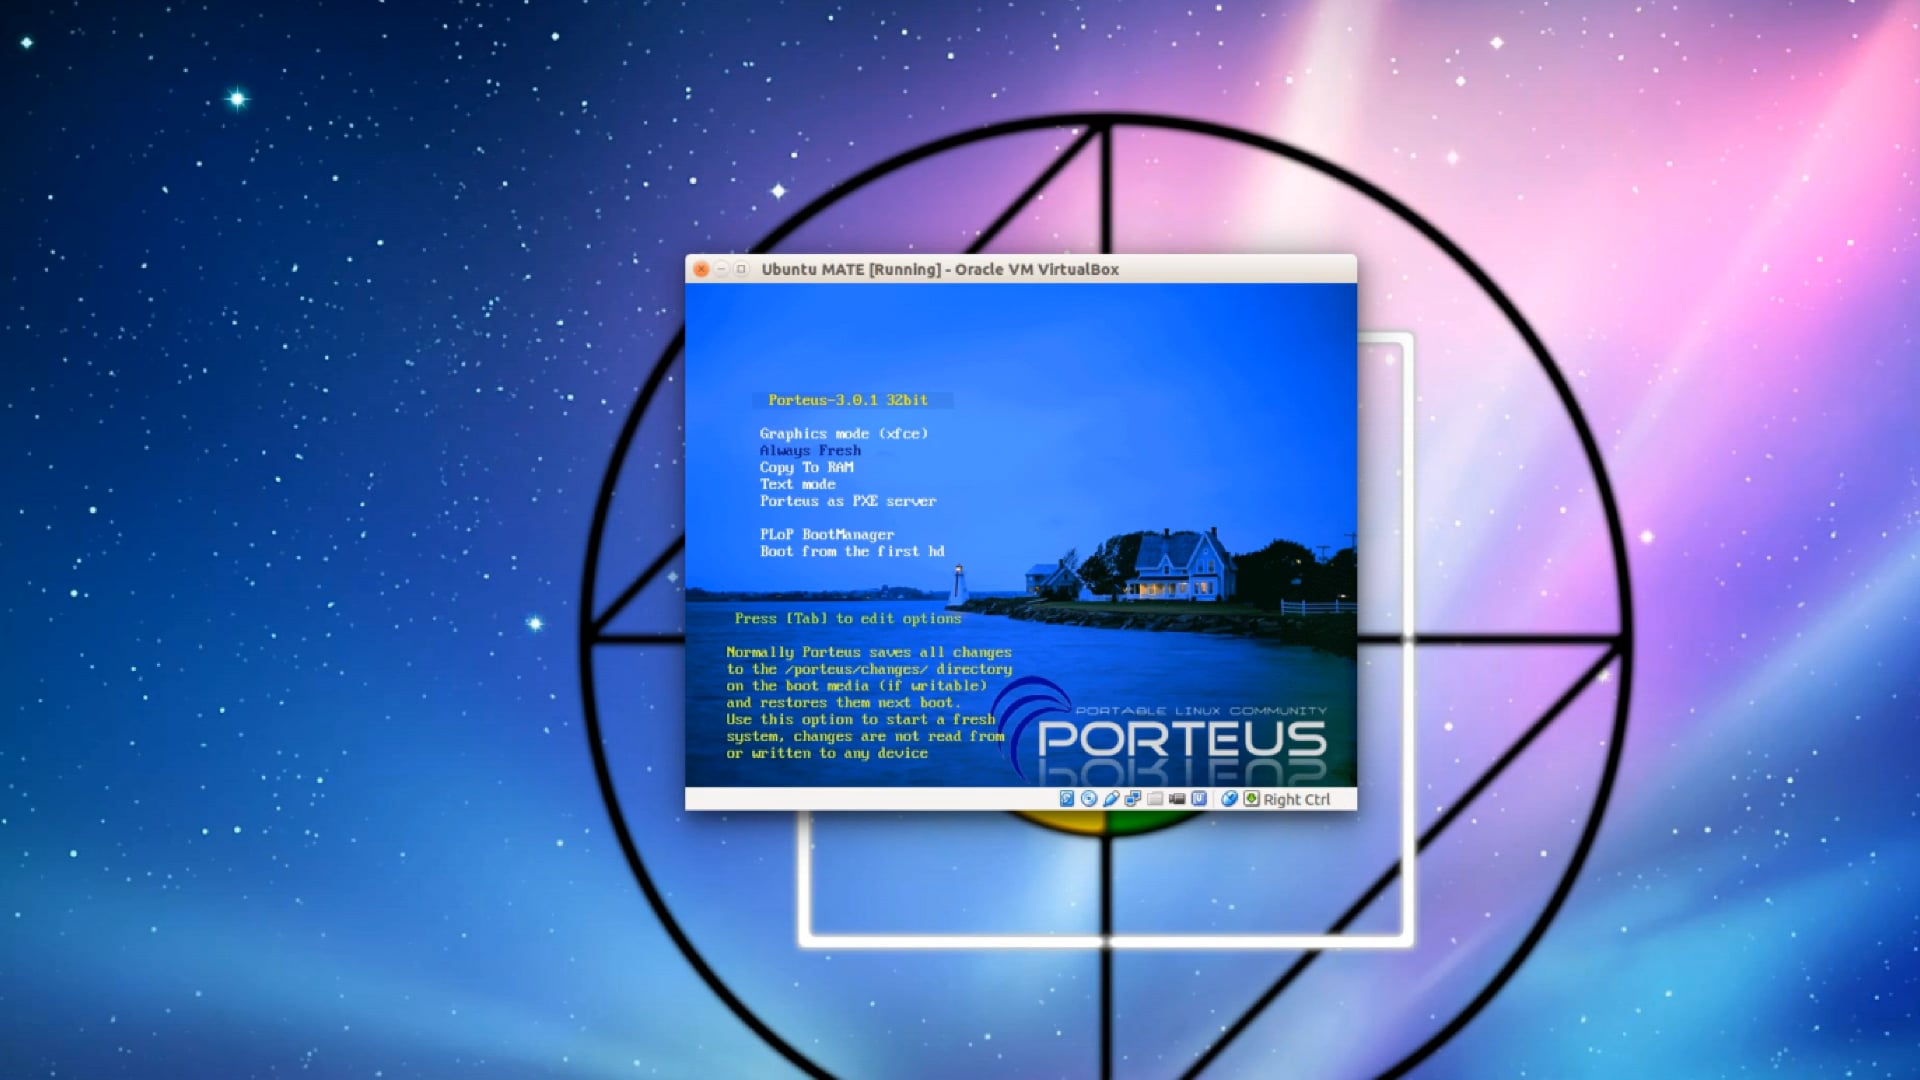 Porteus Linux - Customizable Live Environment